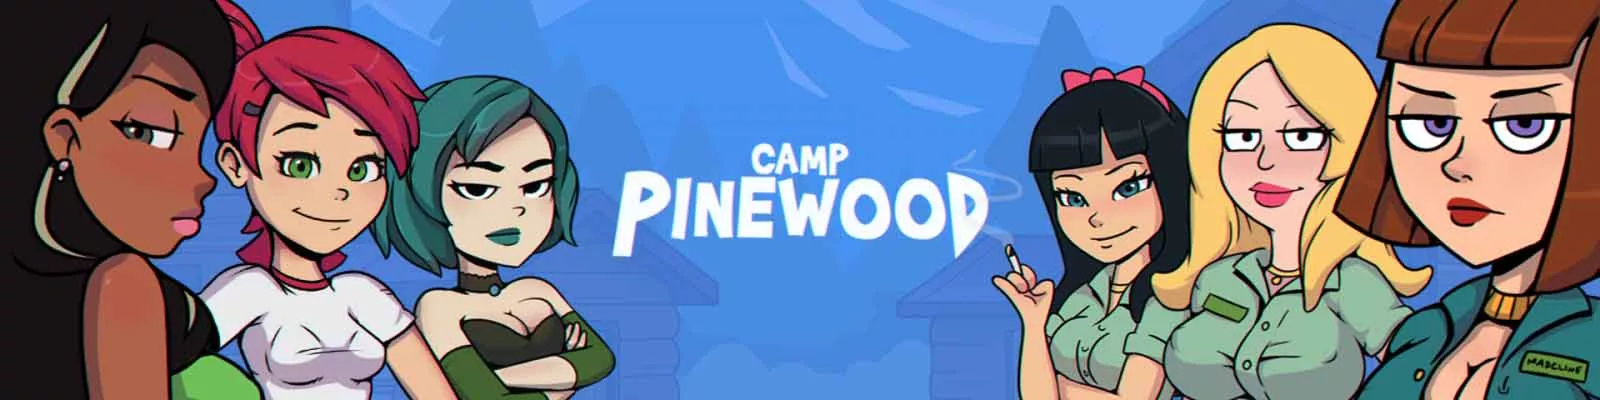 Camp Pinewood juego adulto